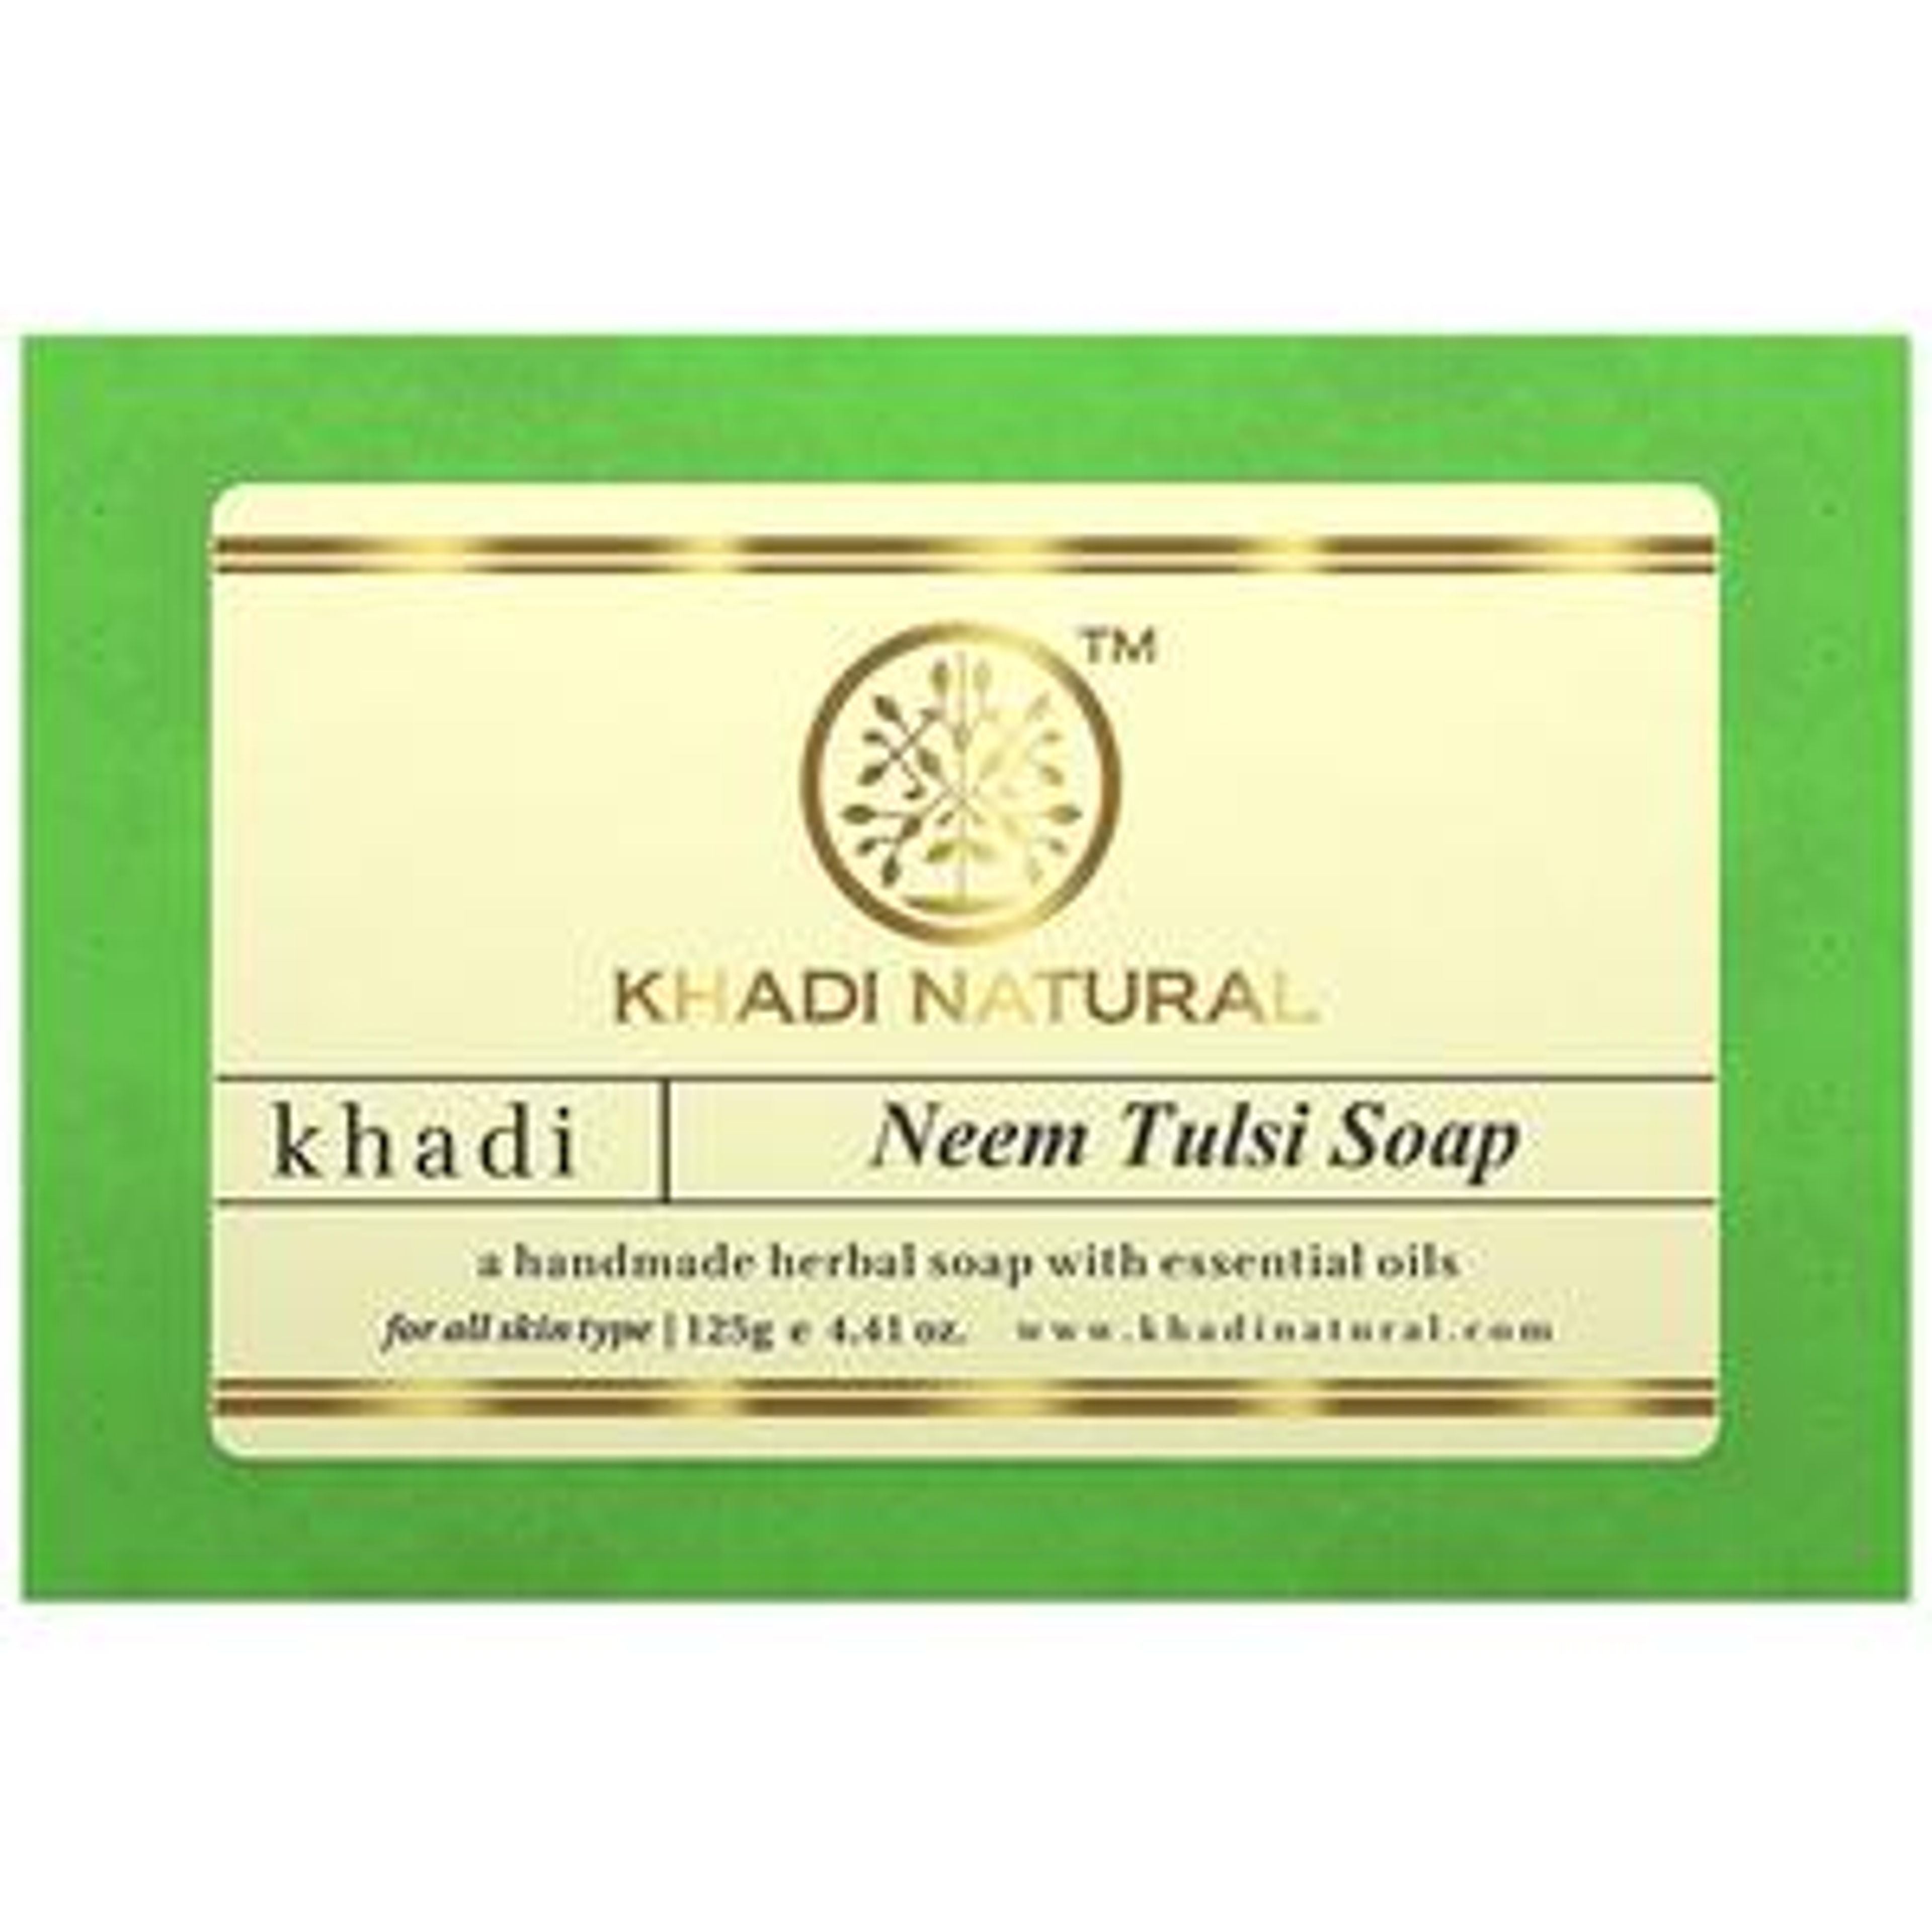 Khadi Natural Neem Tulsi Handmade Herbal Soap